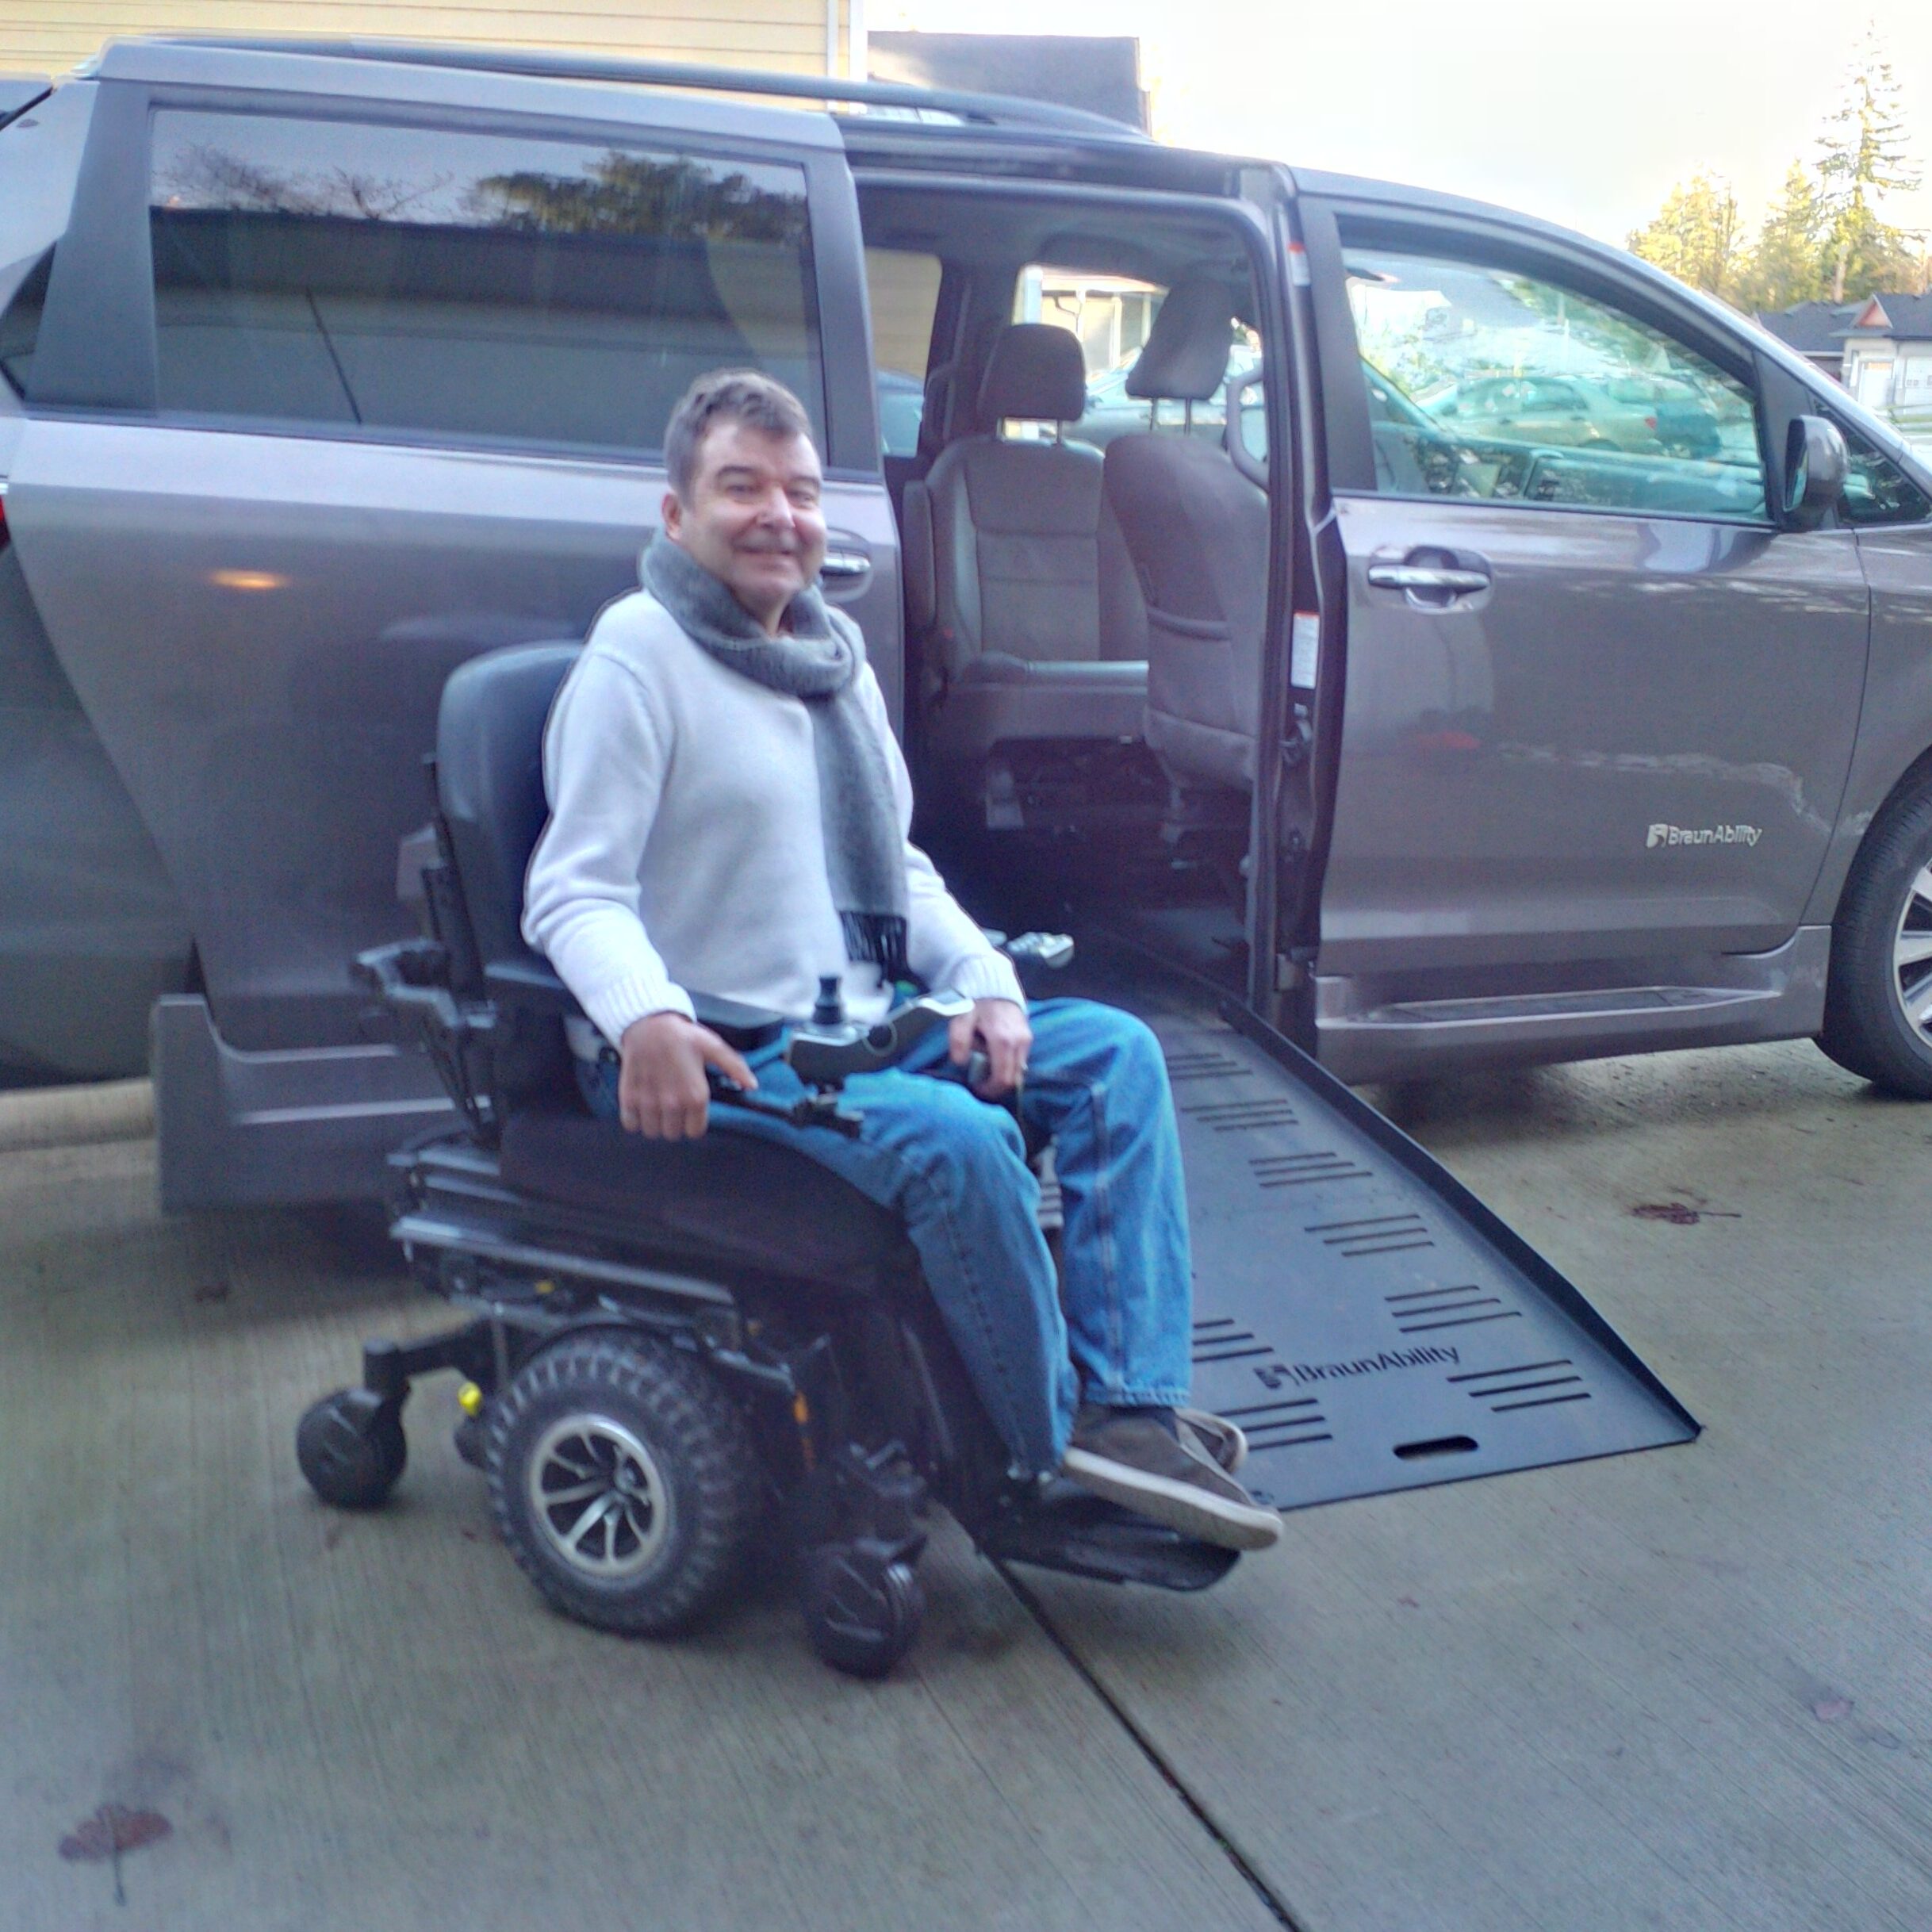 Robert next to his wheelchair accessible van